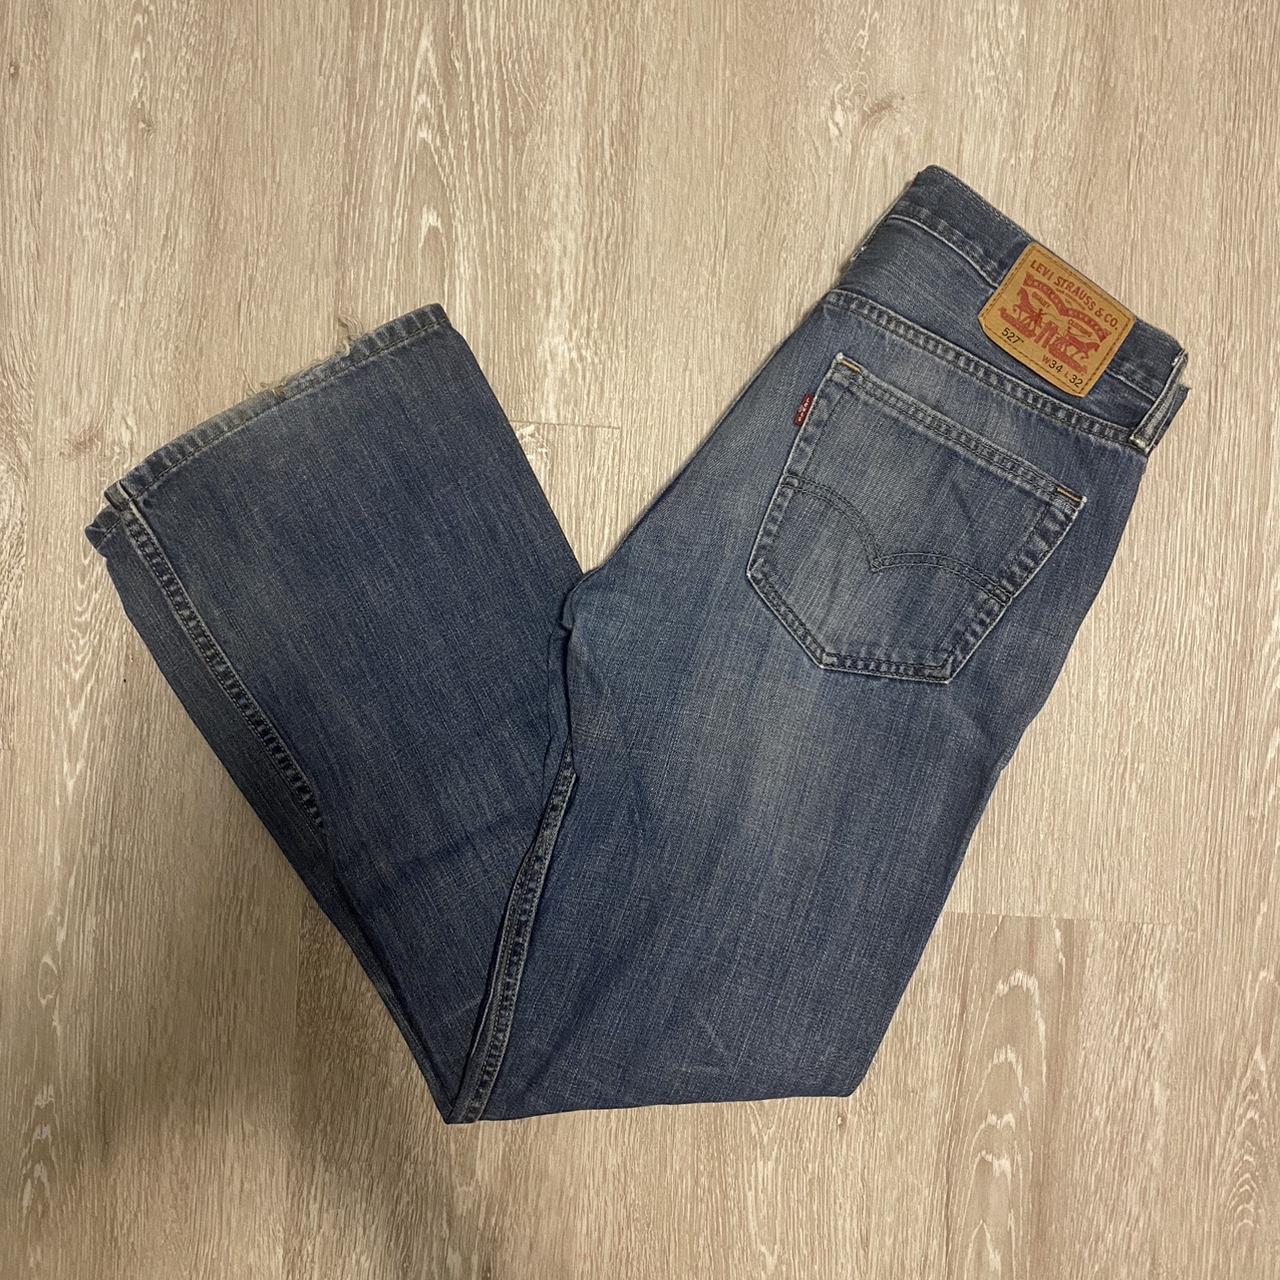 Vintage Levi’s 527 denim jeans 34x32 DM for more... - Depop